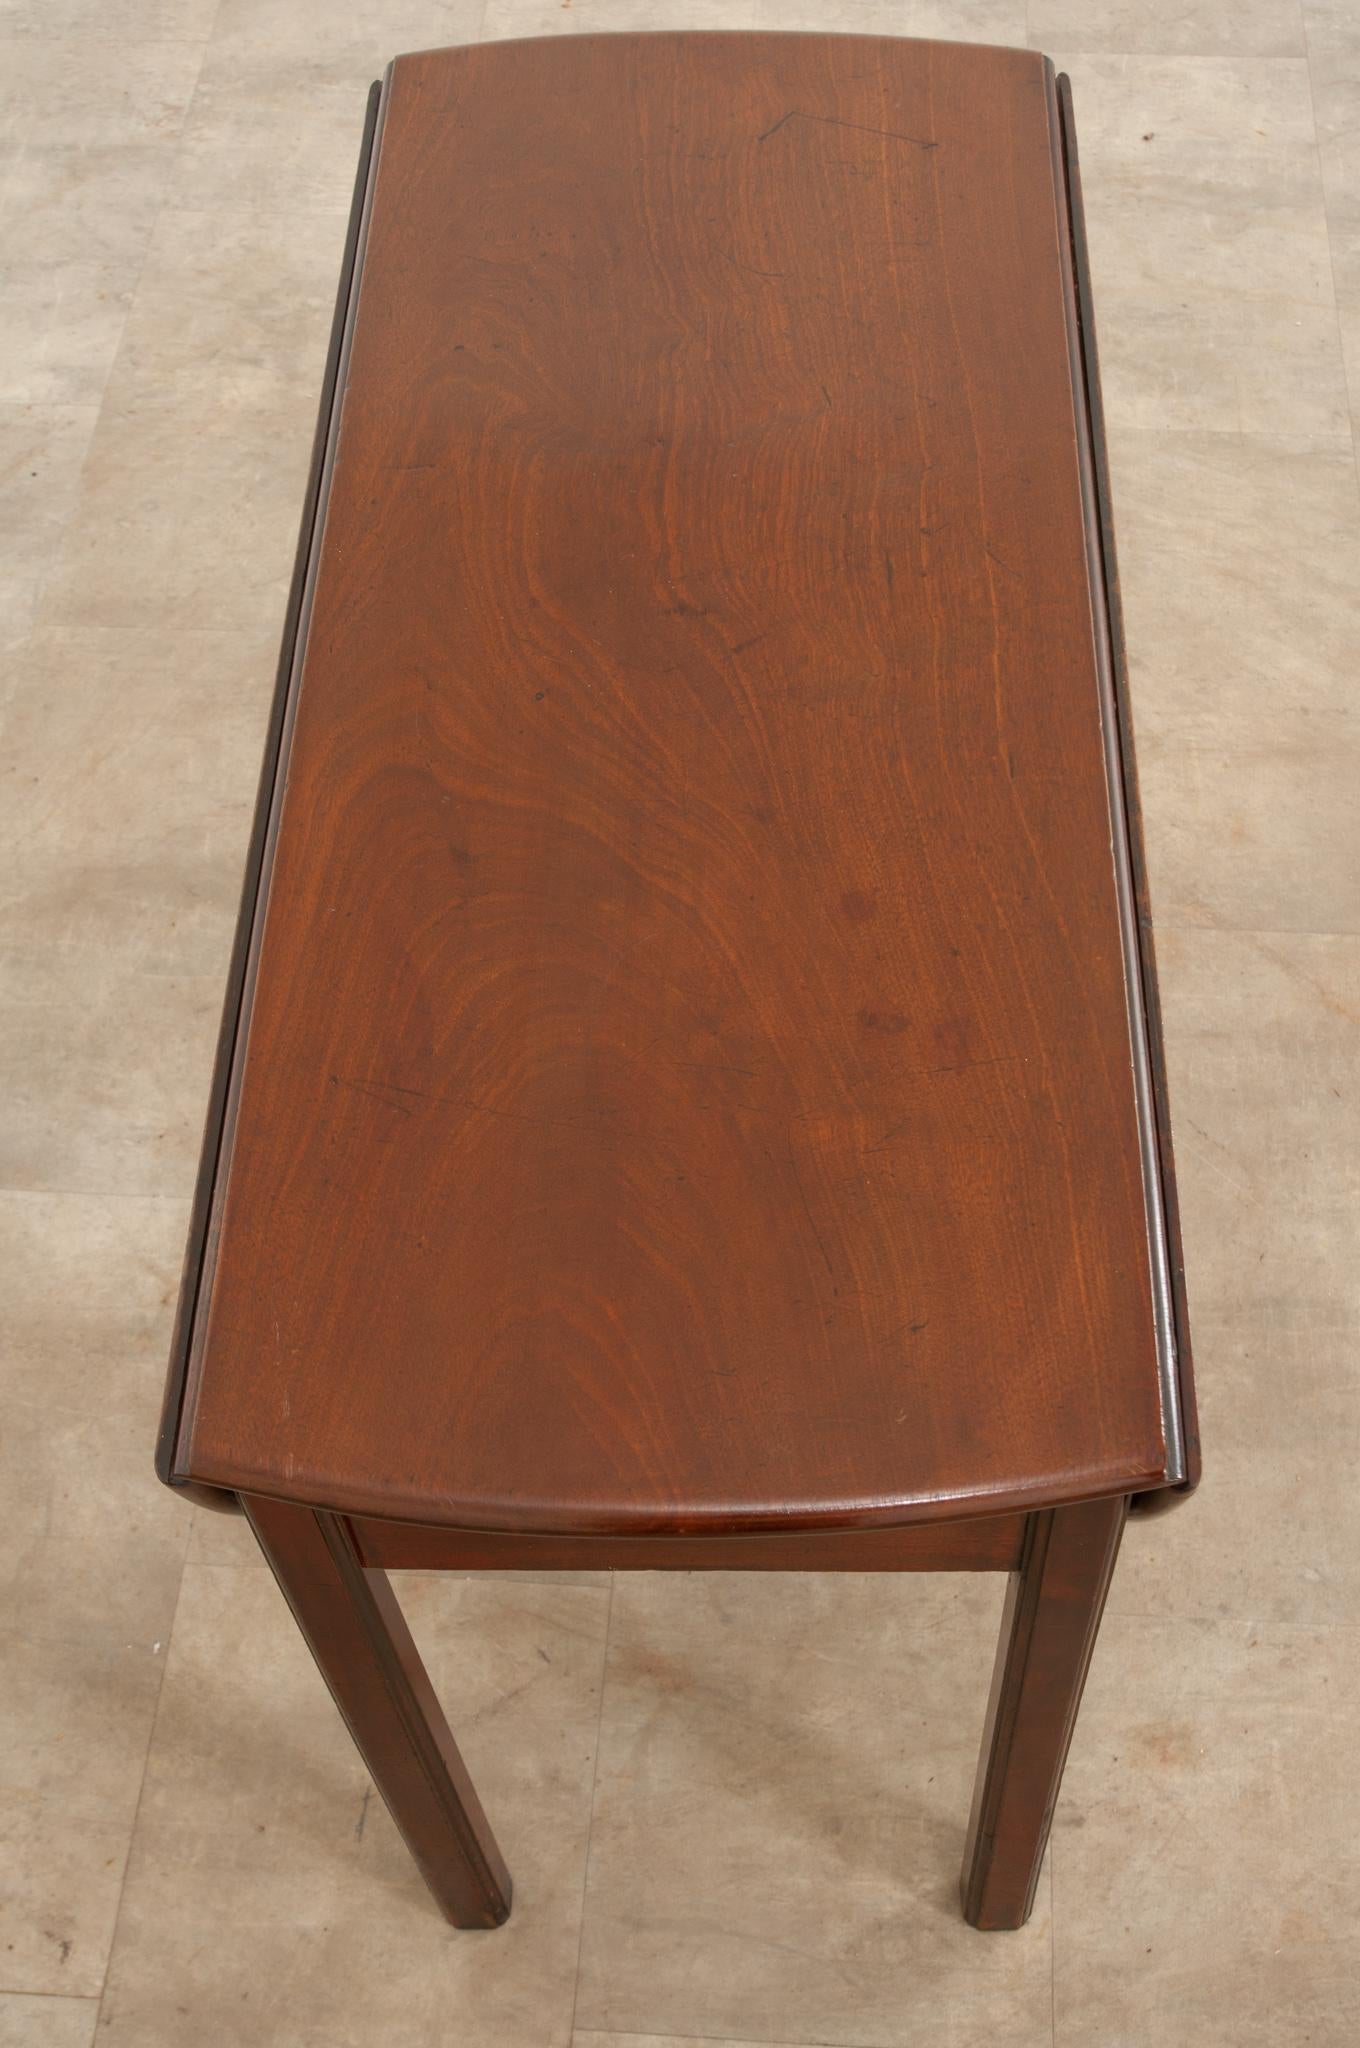 Ein fantastischer englischer Mahagoni-Tisch mit Klappfunktion, hergestellt um 1840. Der Tisch verfügt über zwei große, halbmondförmige Blätter, die sich in heruntergeklapptem Zustand an die Seiten des Tisches legen. Um die Platte zu erweitern und